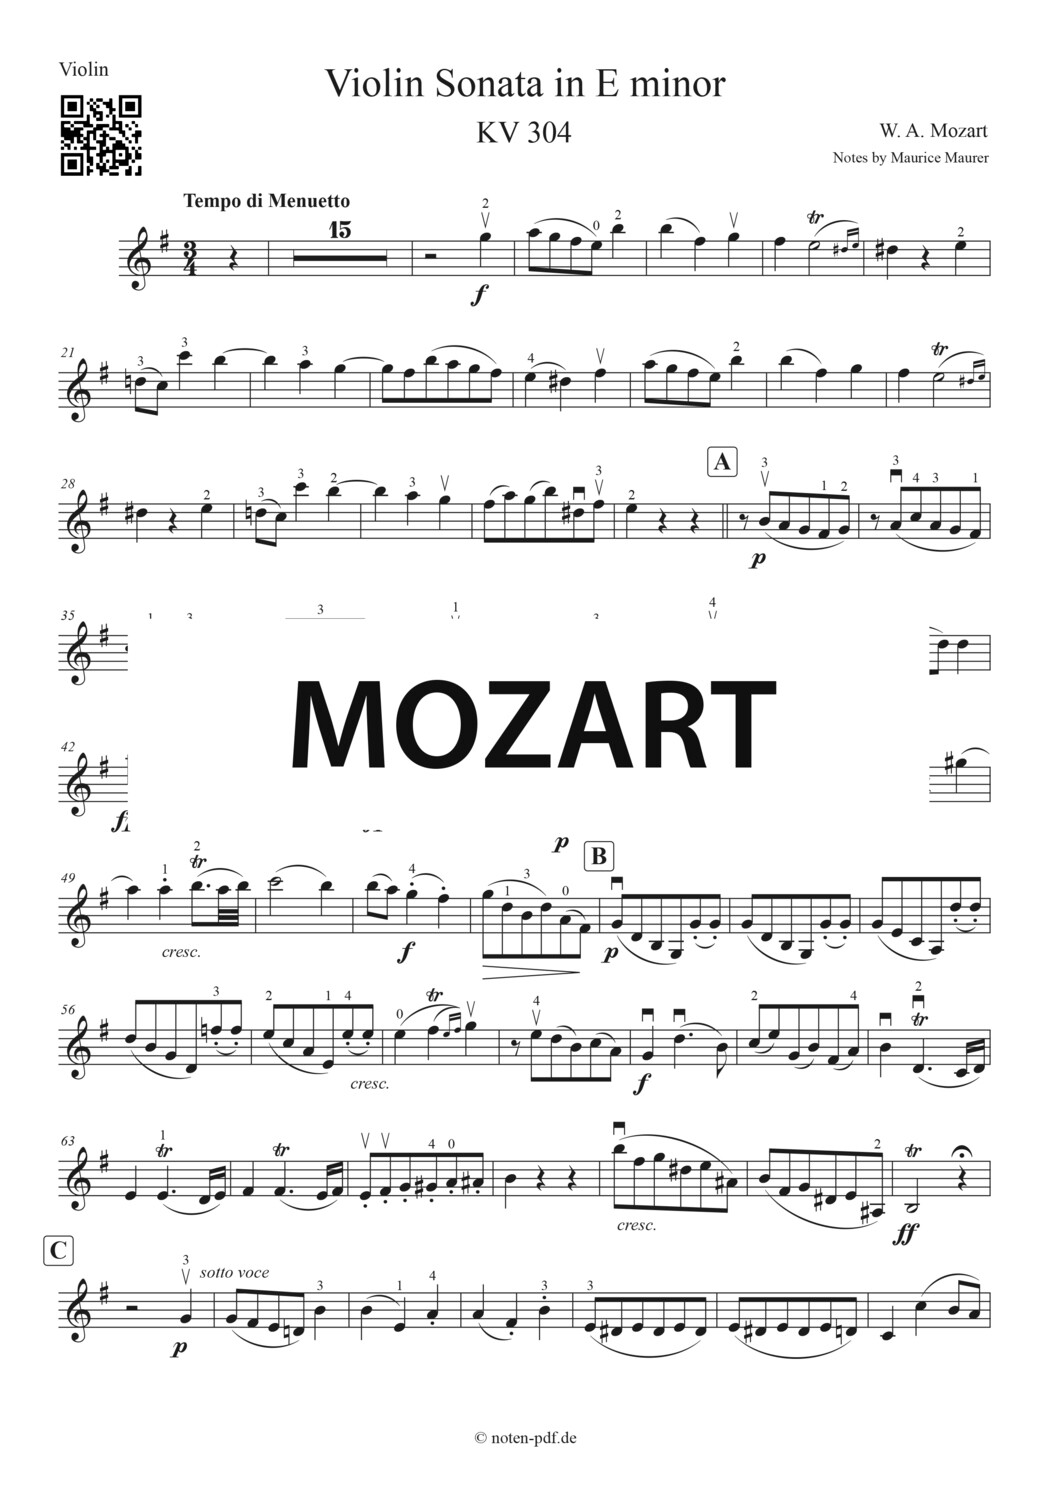 Mozart: Violin Sonate in E minor 2. Movement